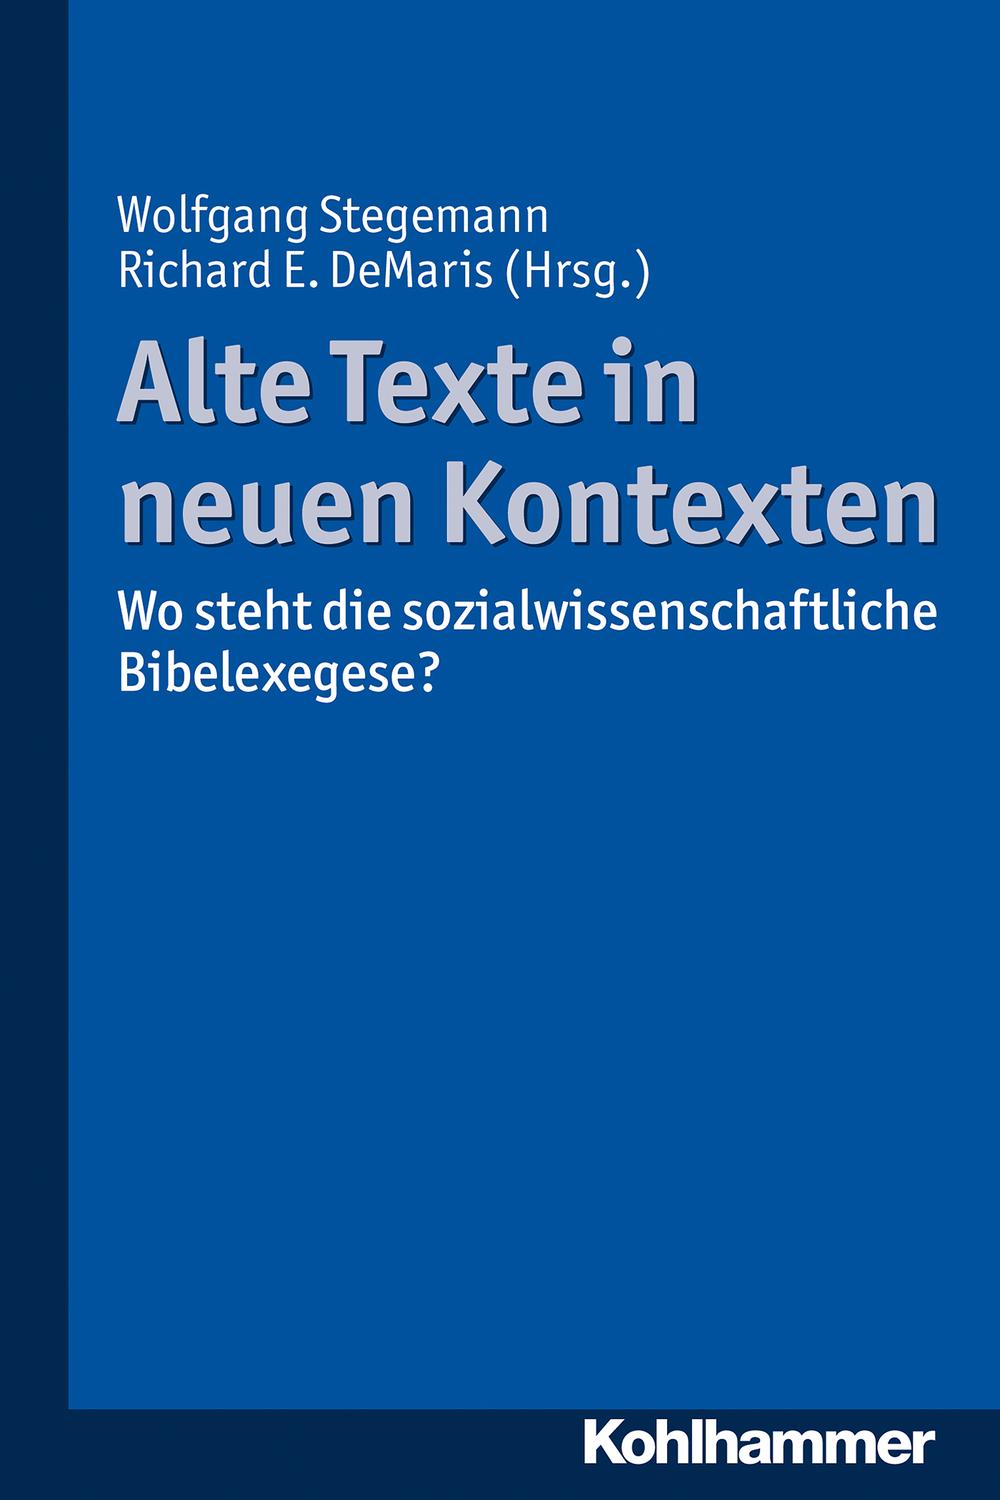 Alte Texte in neuen Kontexten - Wolfgang Stegemann, Richard E. DeMaris